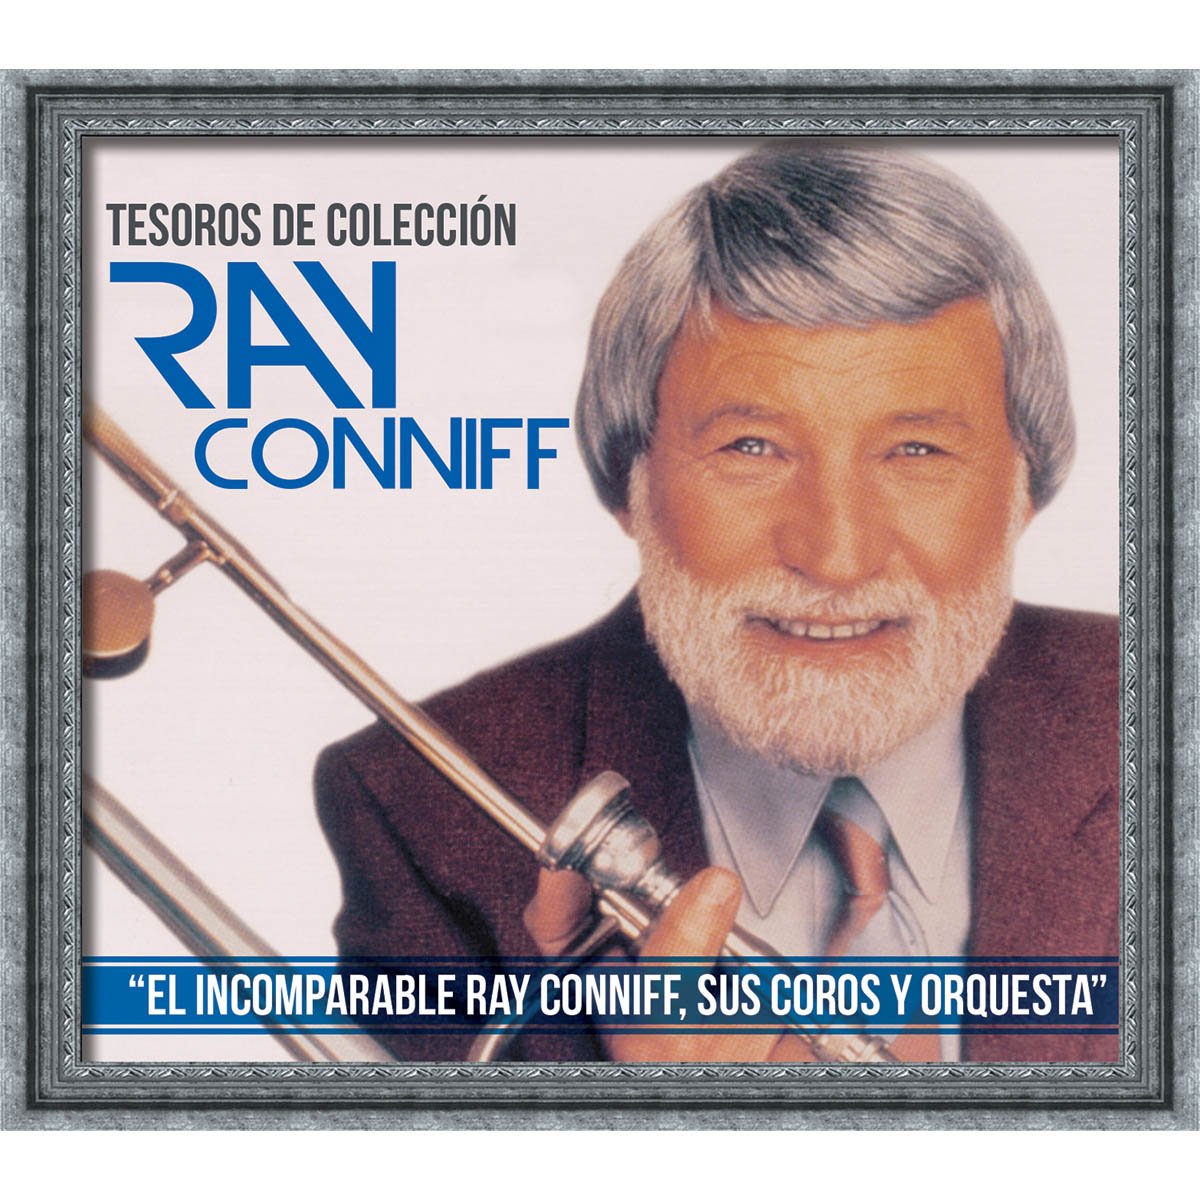 3 Cds Ray Conniff Tesoros de Colección